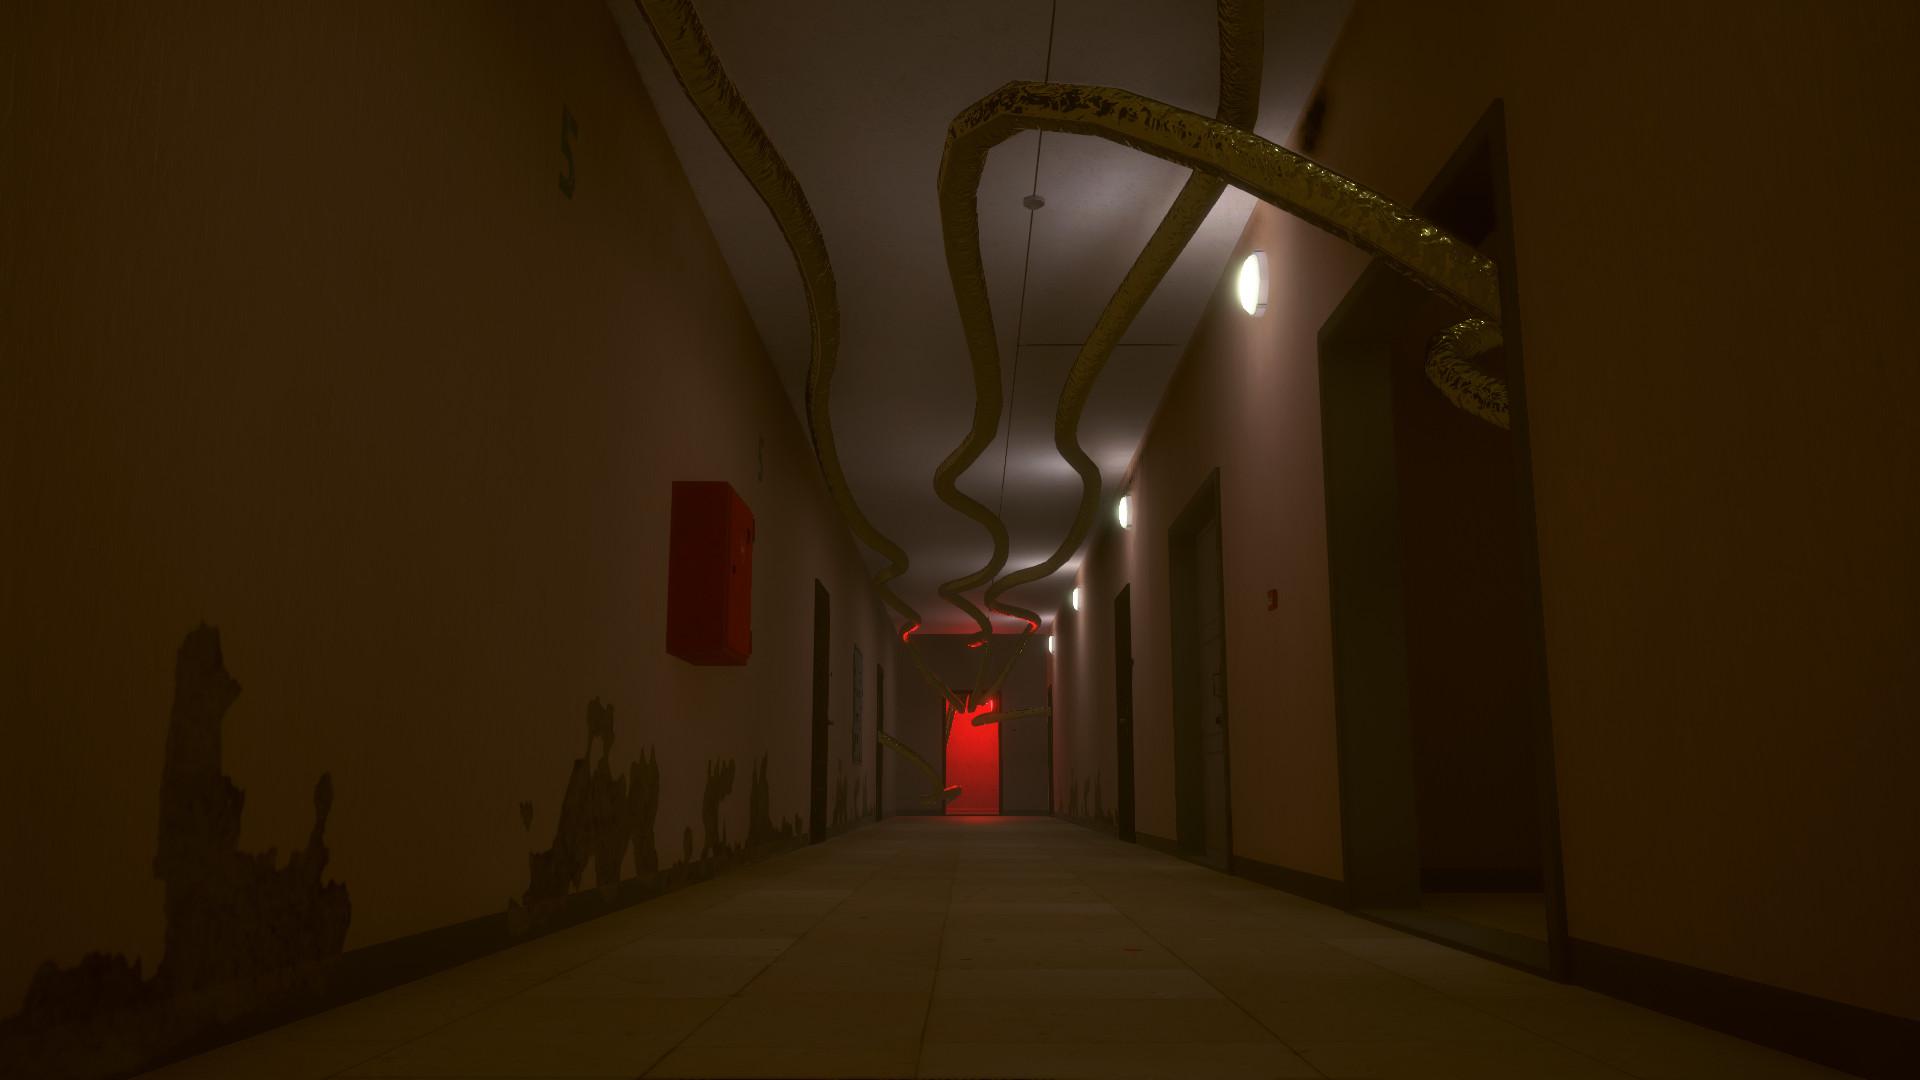 Screenshot №7 from game Last Floor